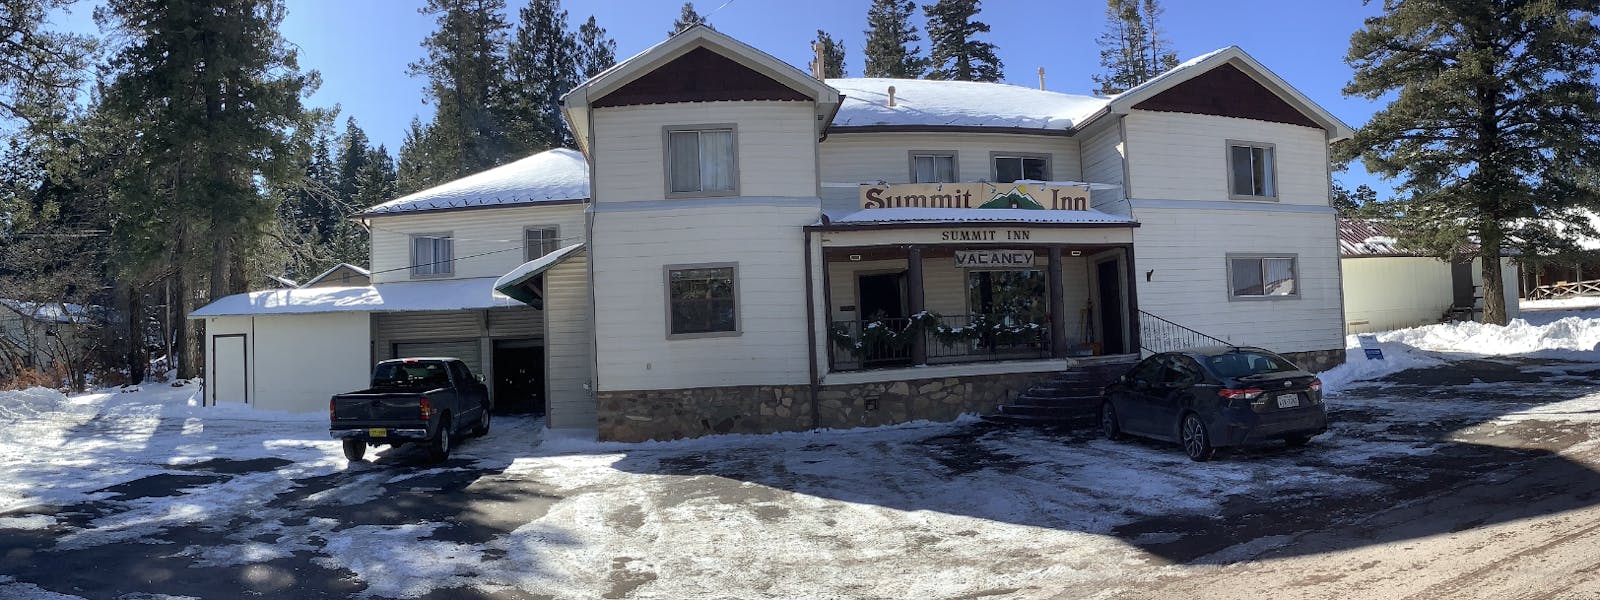 Summit Inn Front